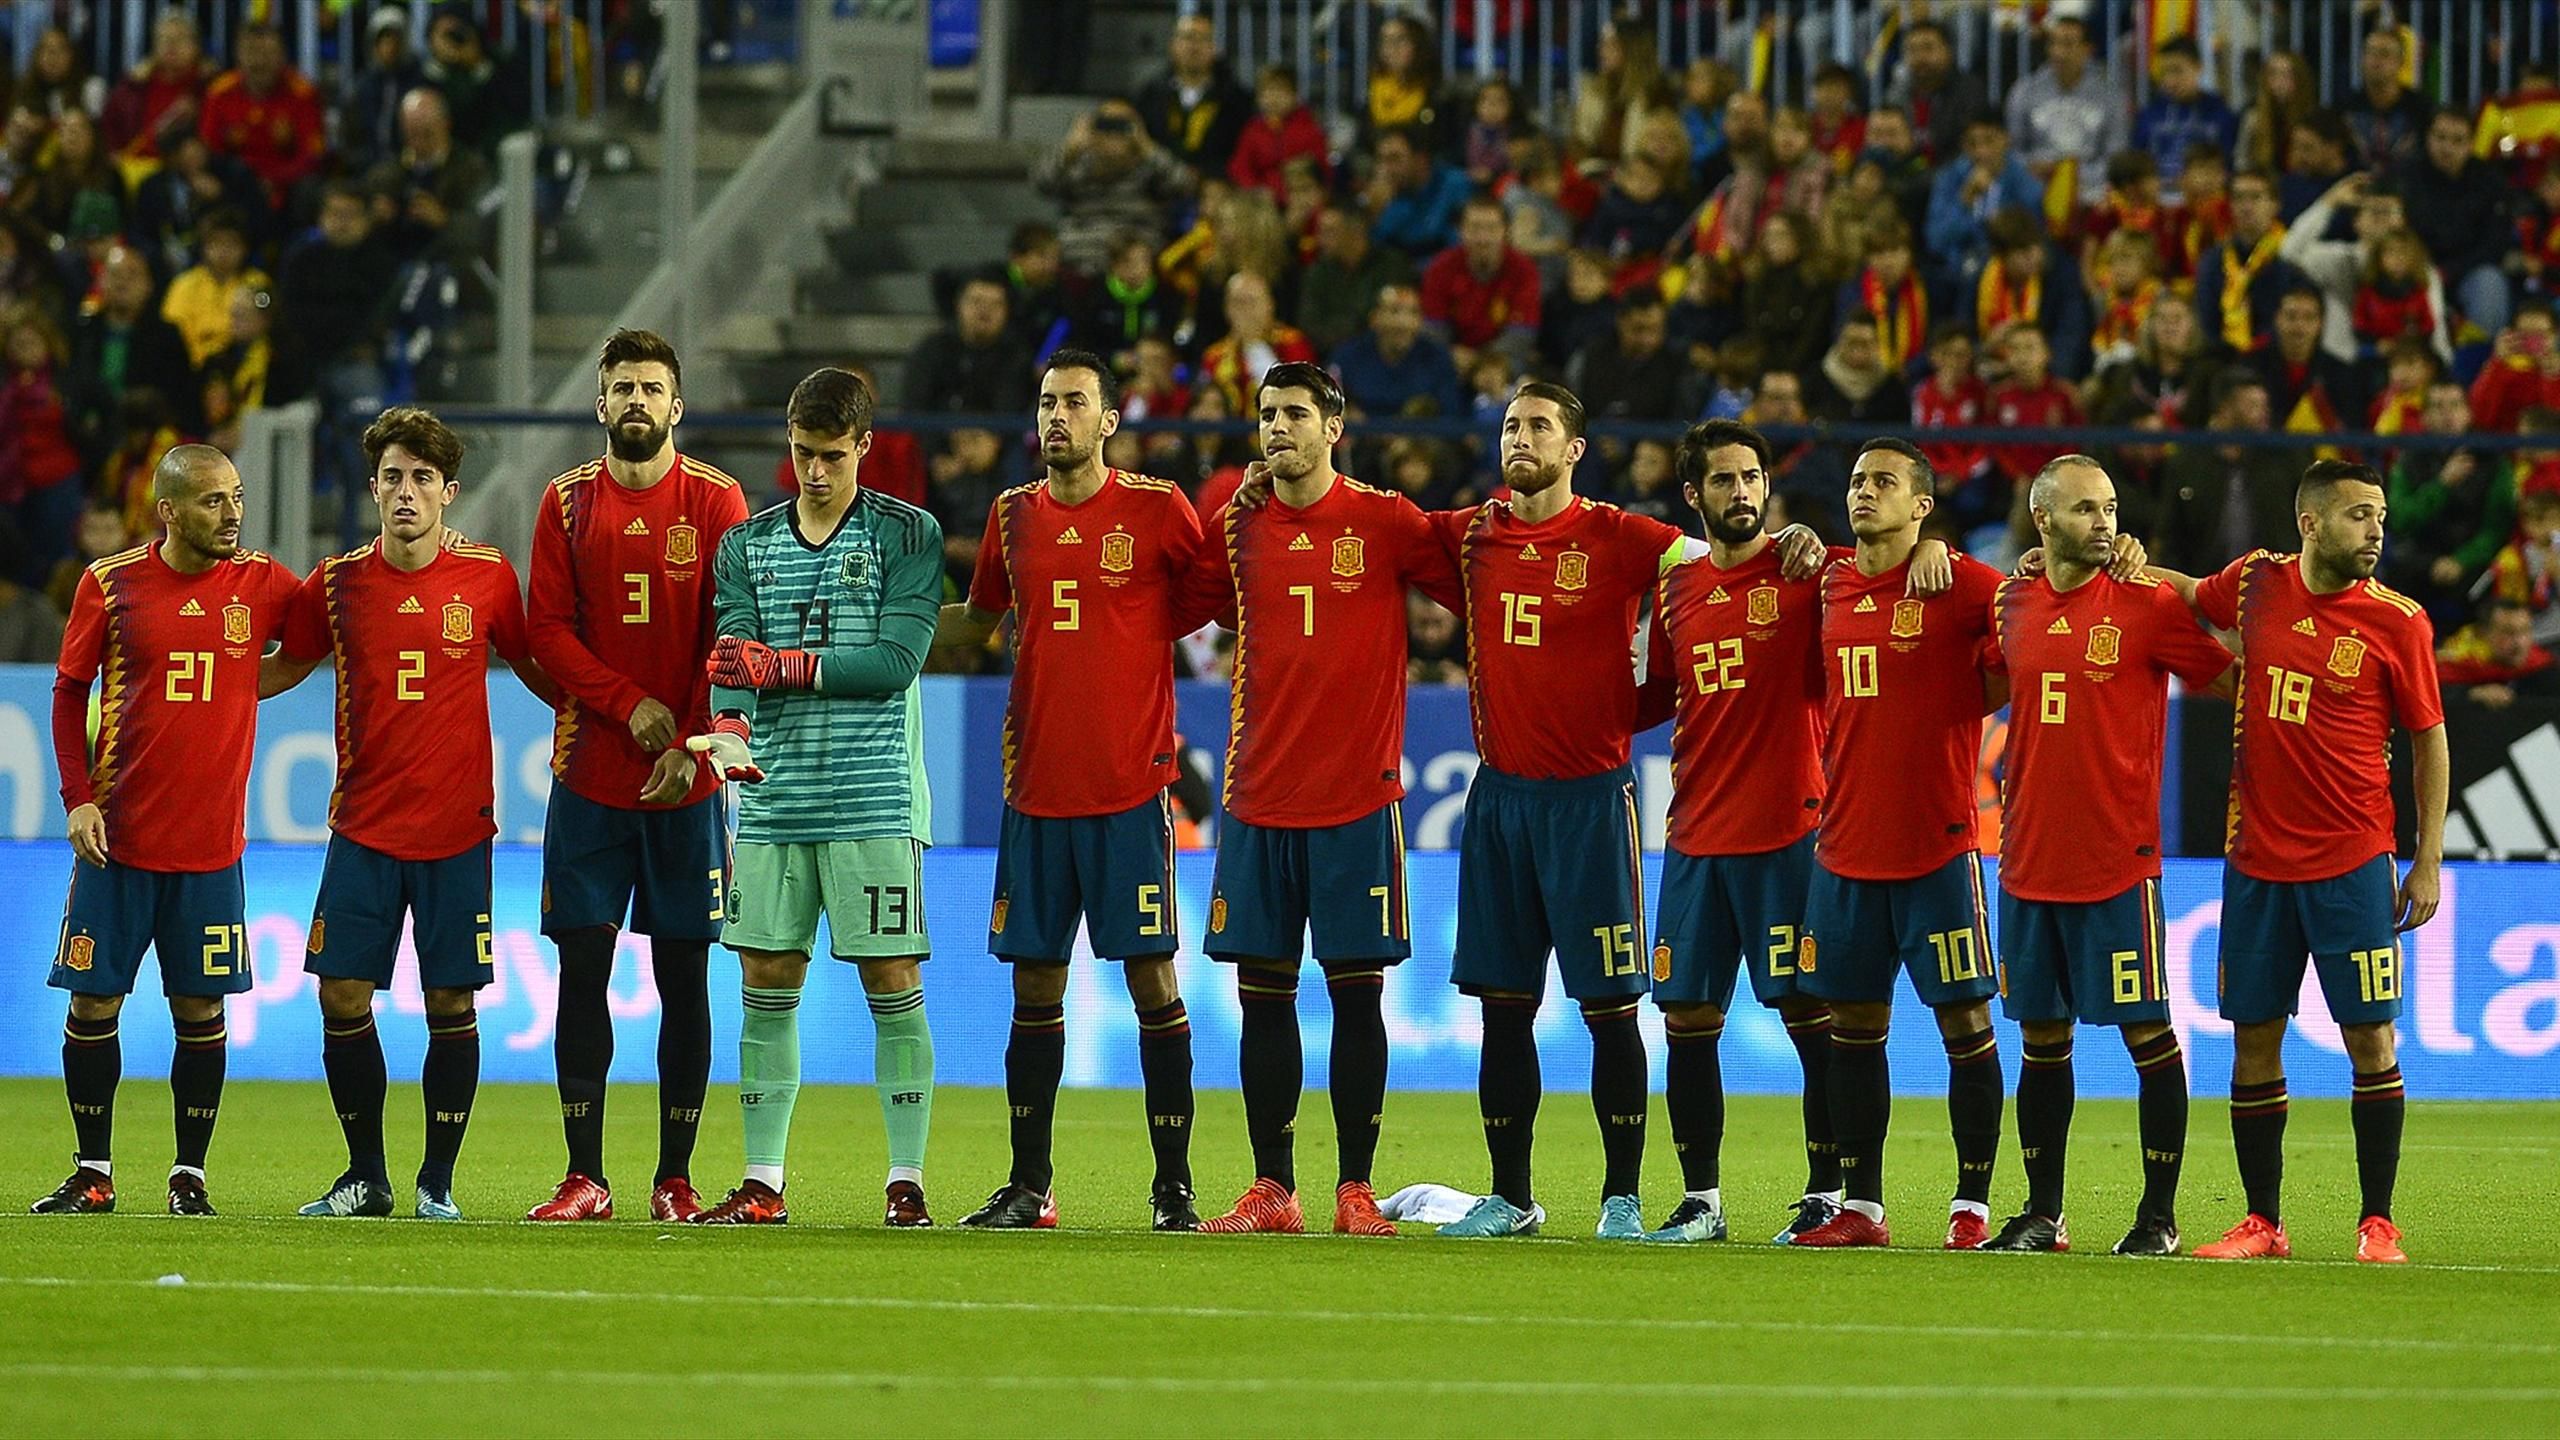 Horarios de los partidos España en el Mundial de 2018 - Eurosport